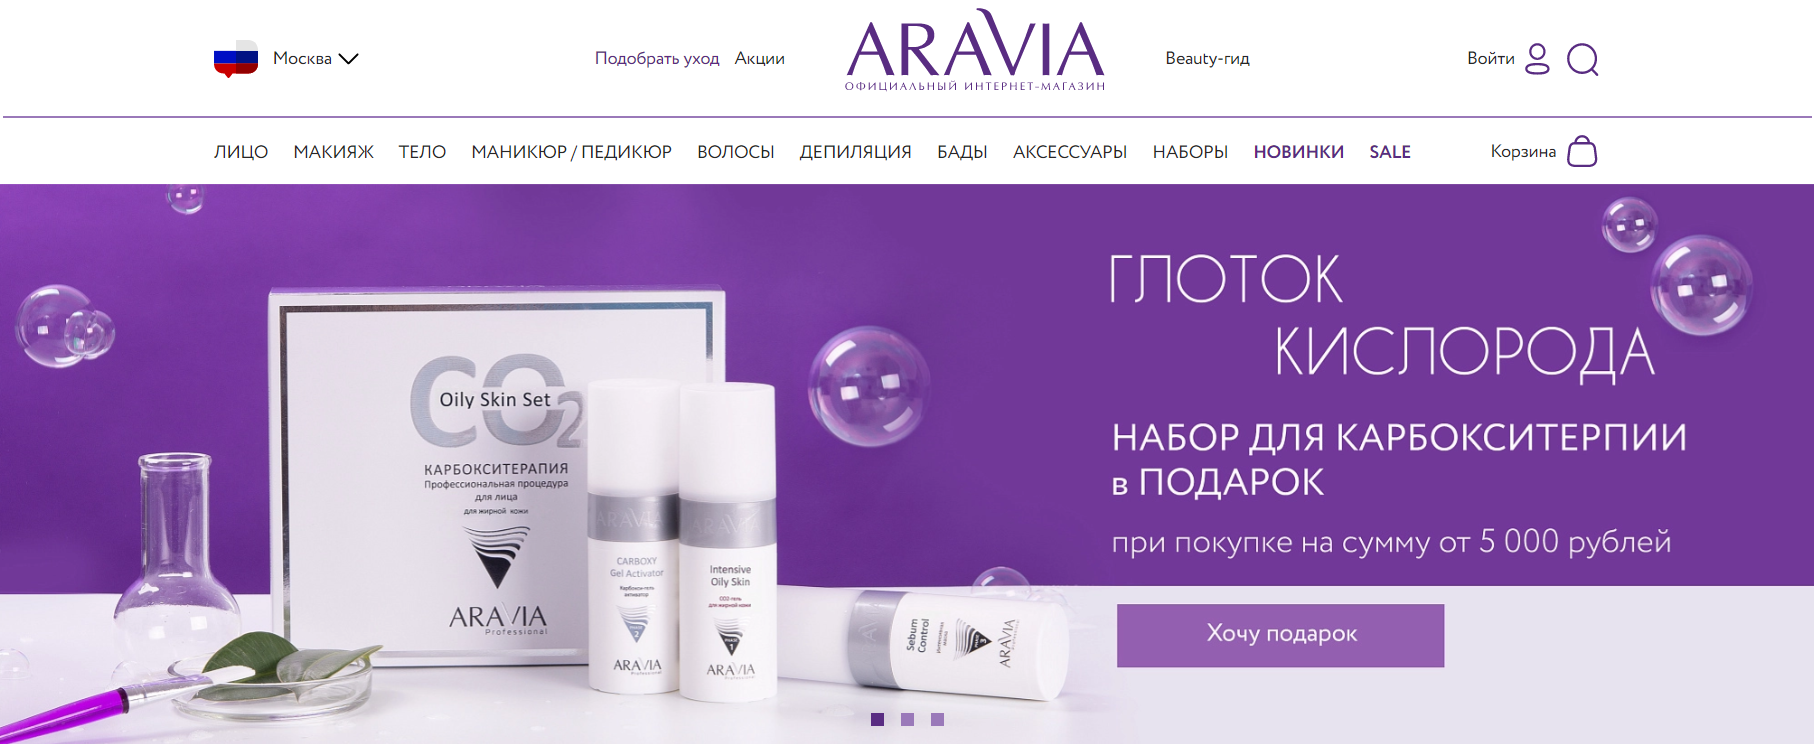 ARAVIA официальный сайт интернет-магазина